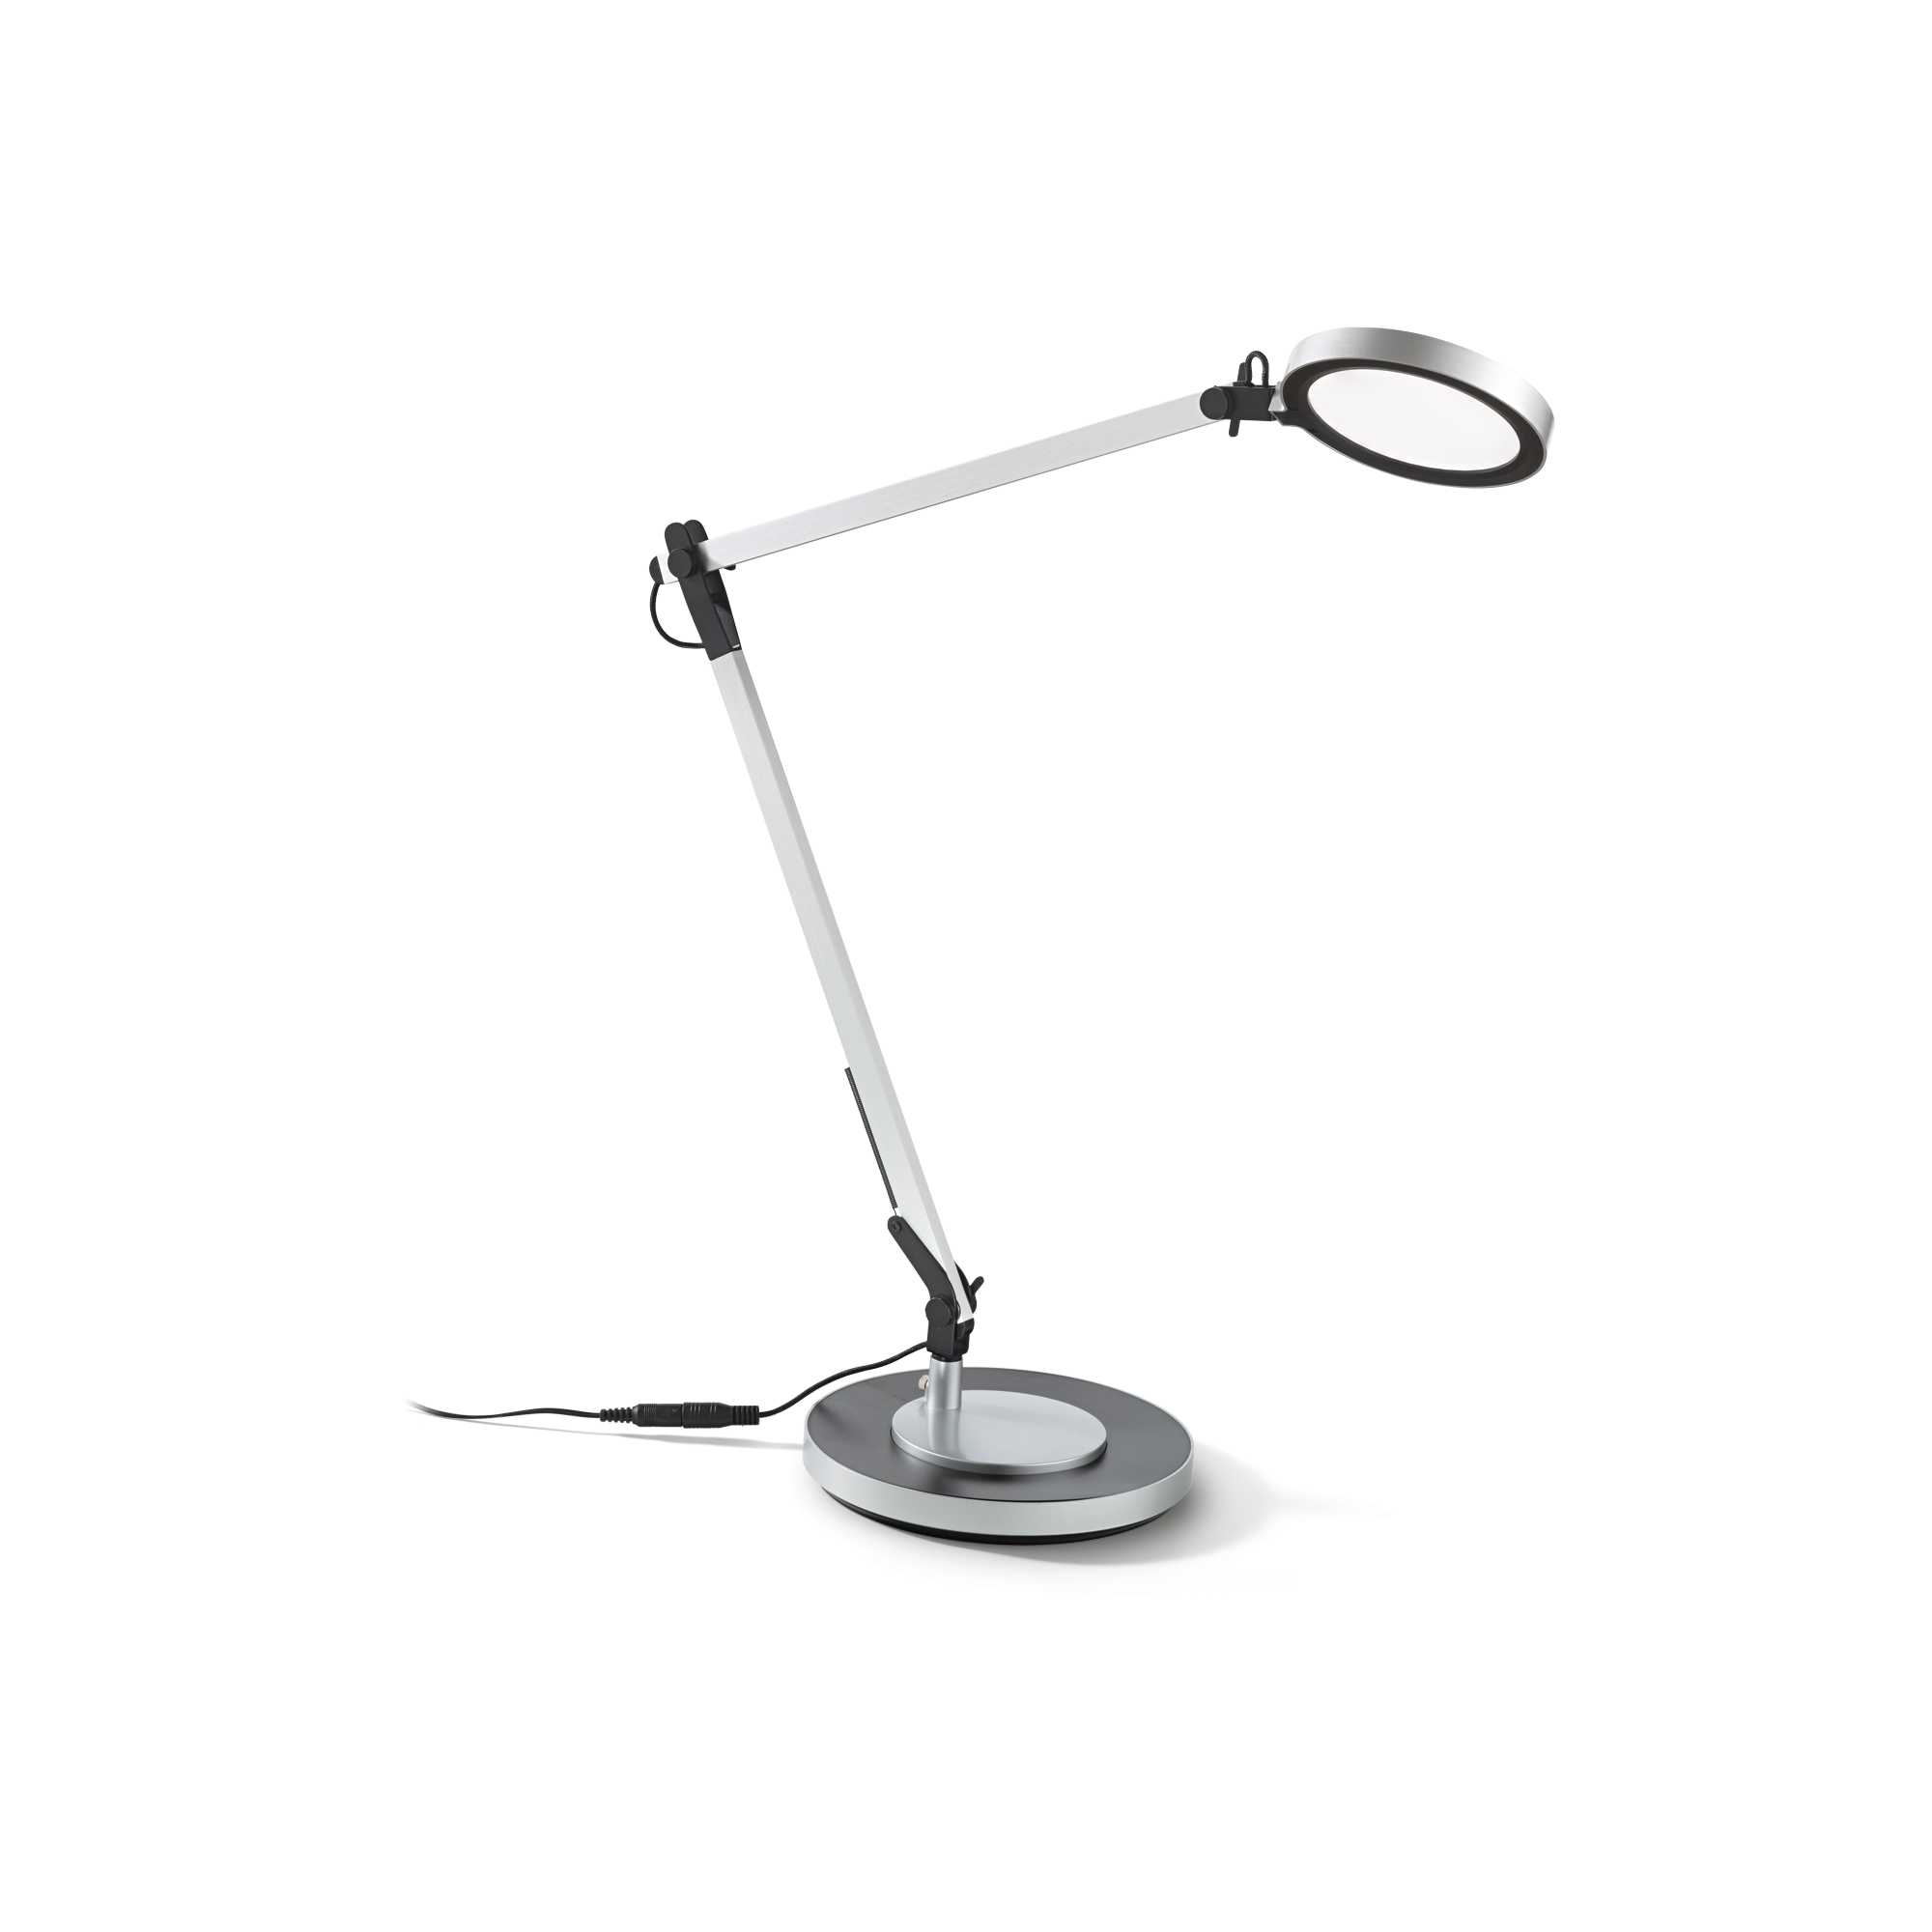 FUTURA de Ideal Lux. Lámpara de mesa Moderno | Amara Iluminación